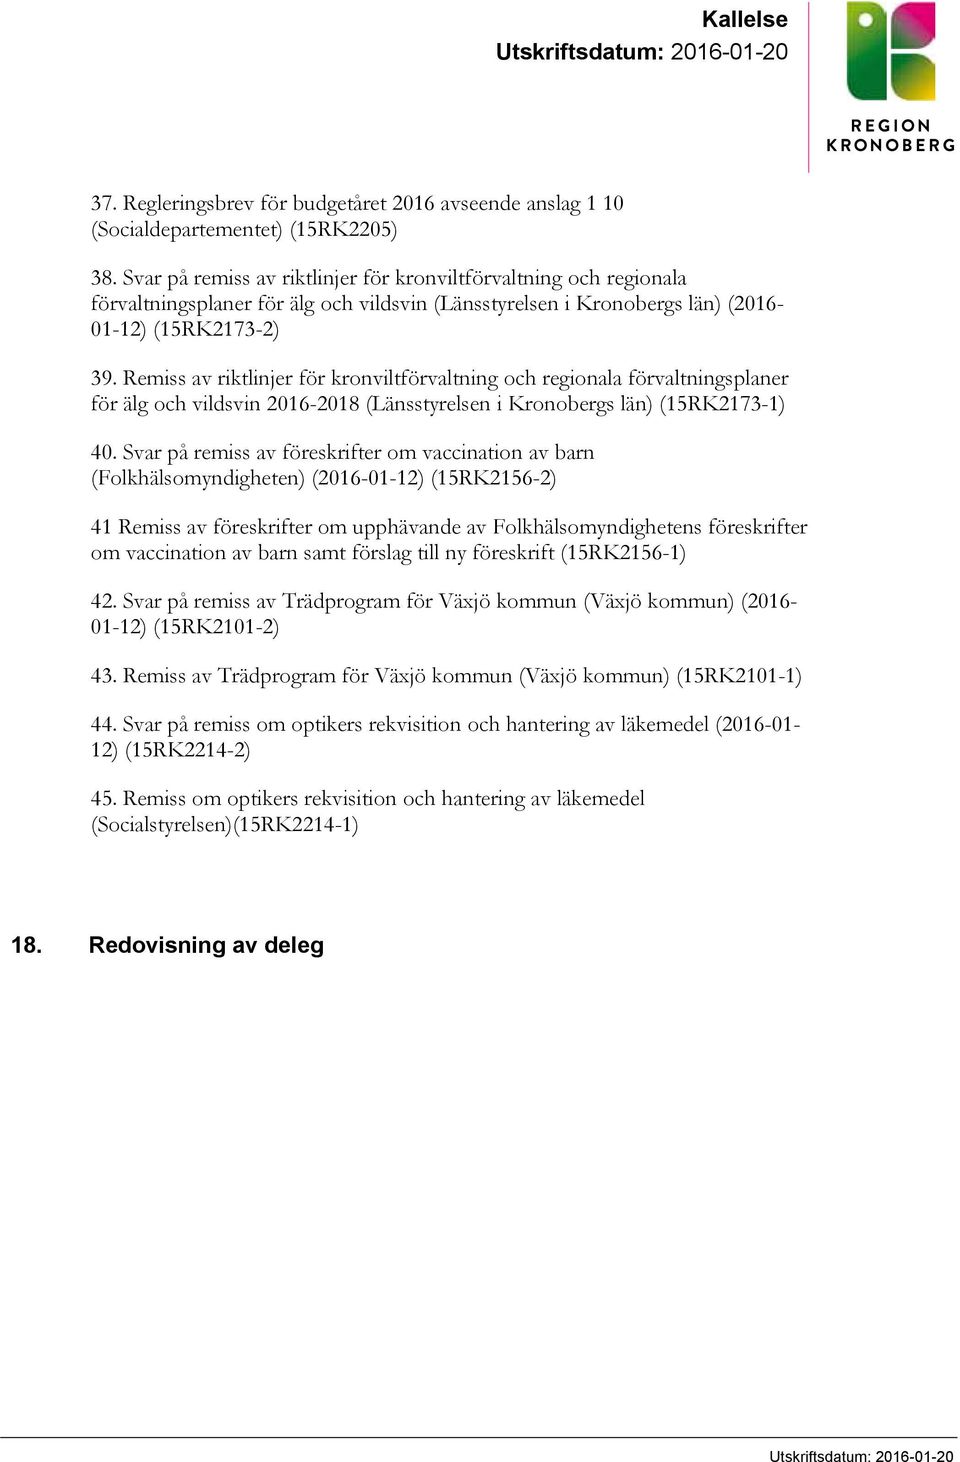 Remiss av riktlinjer för kronviltförvaltning och regionala förvaltningsplaner för älg och vildsvin 2016-2018 (Länsstyrelsen i Kronobergs län) (15RK2173-1) 40.